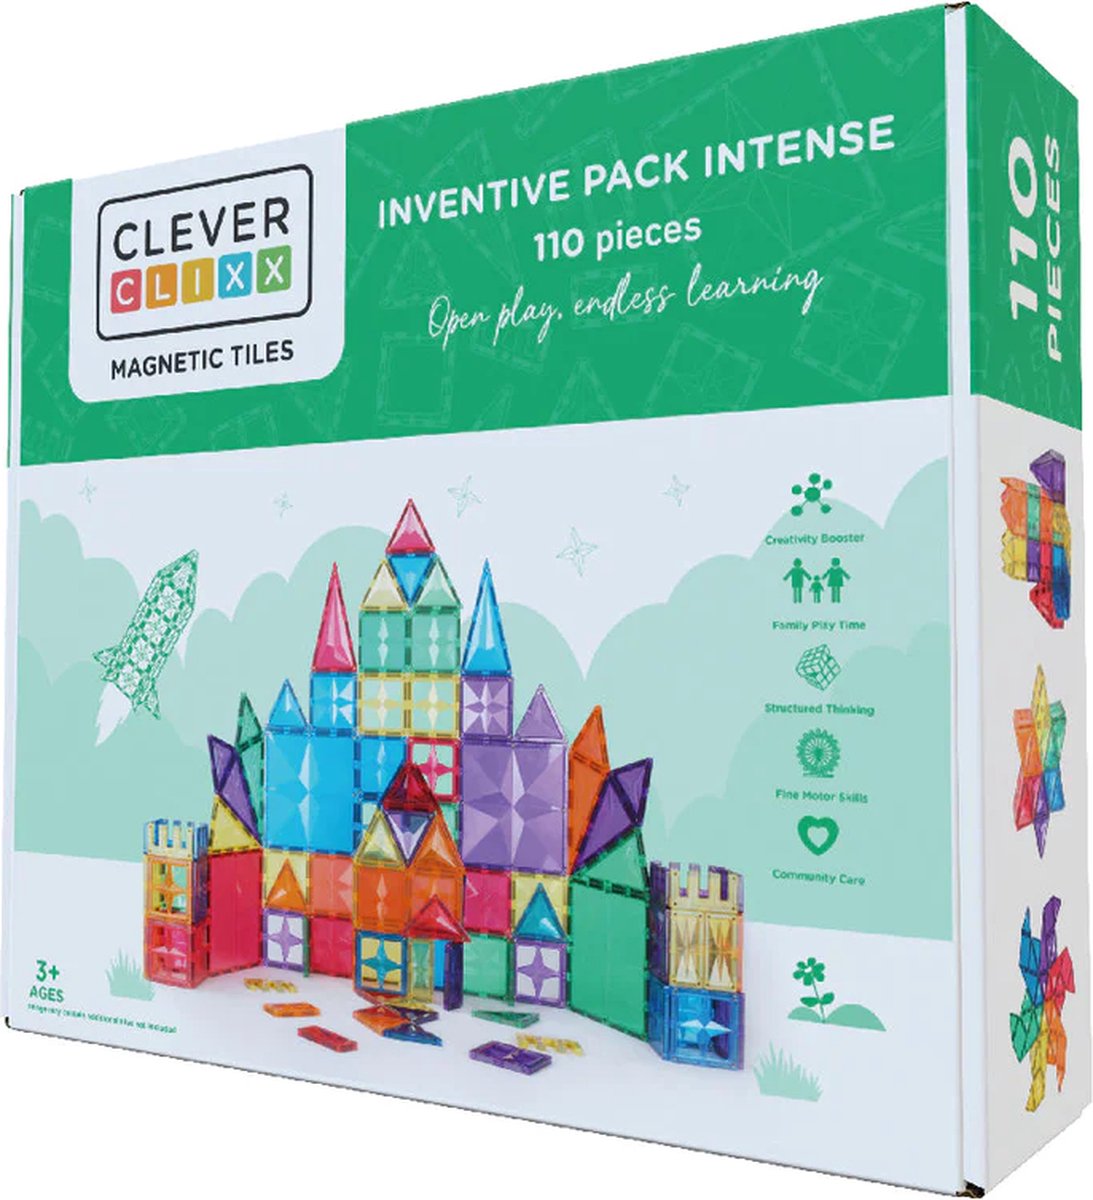 Cleverclixx Magnetisch Speelgoed | Inventive Pack Intense | 110 Stuks | Speelgoed 3 jaar